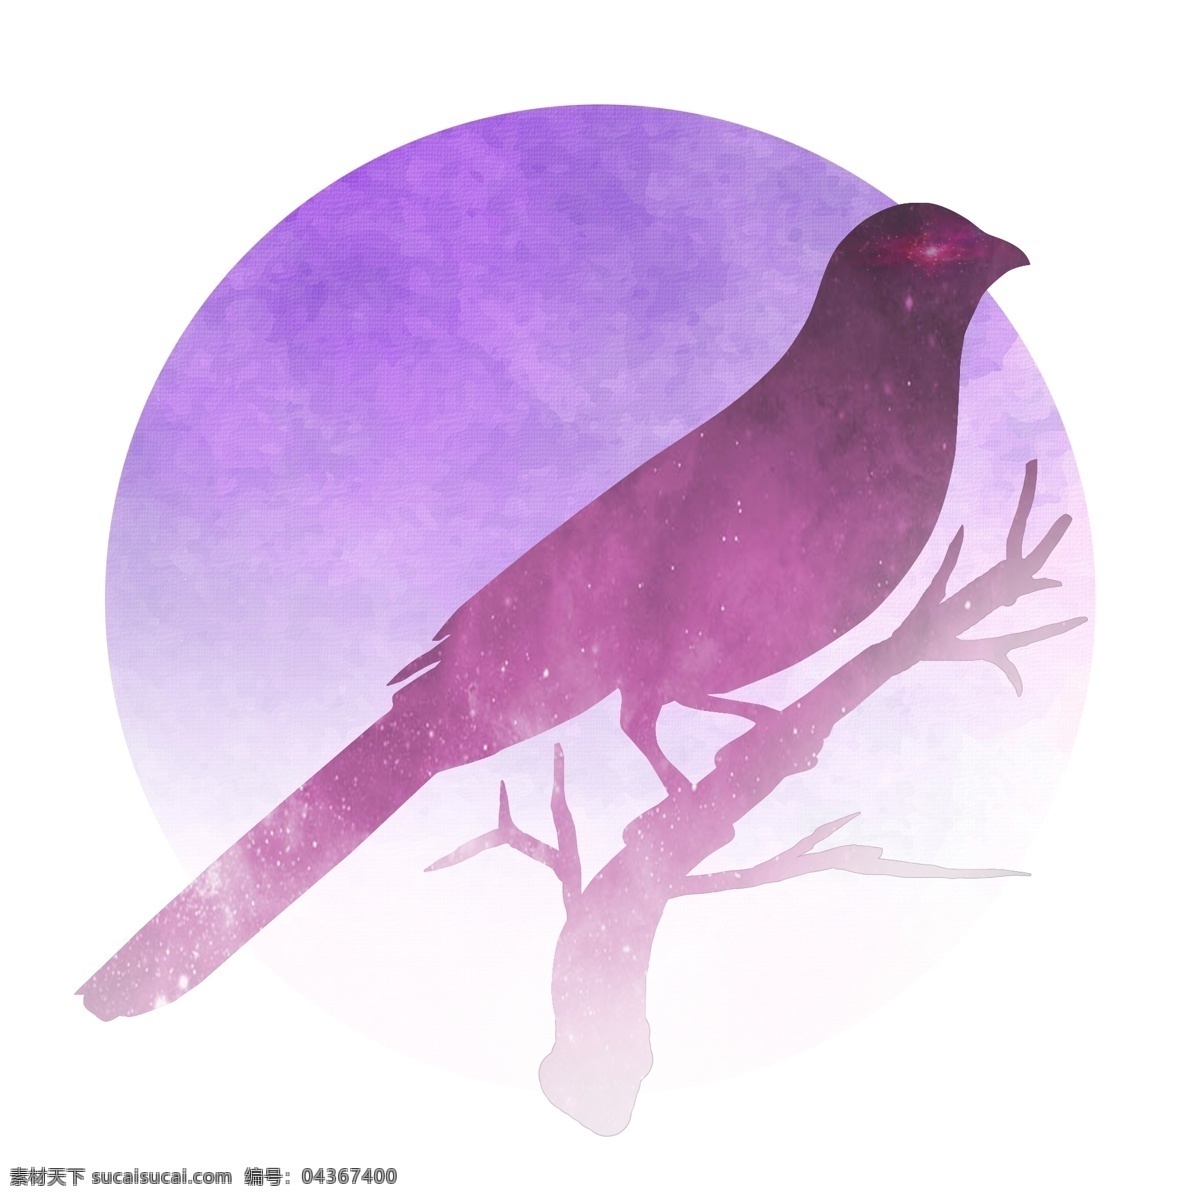 紫红色 暗 夜鸟 商用 元素 紫色 淡红色 鸟 树枝 可商用